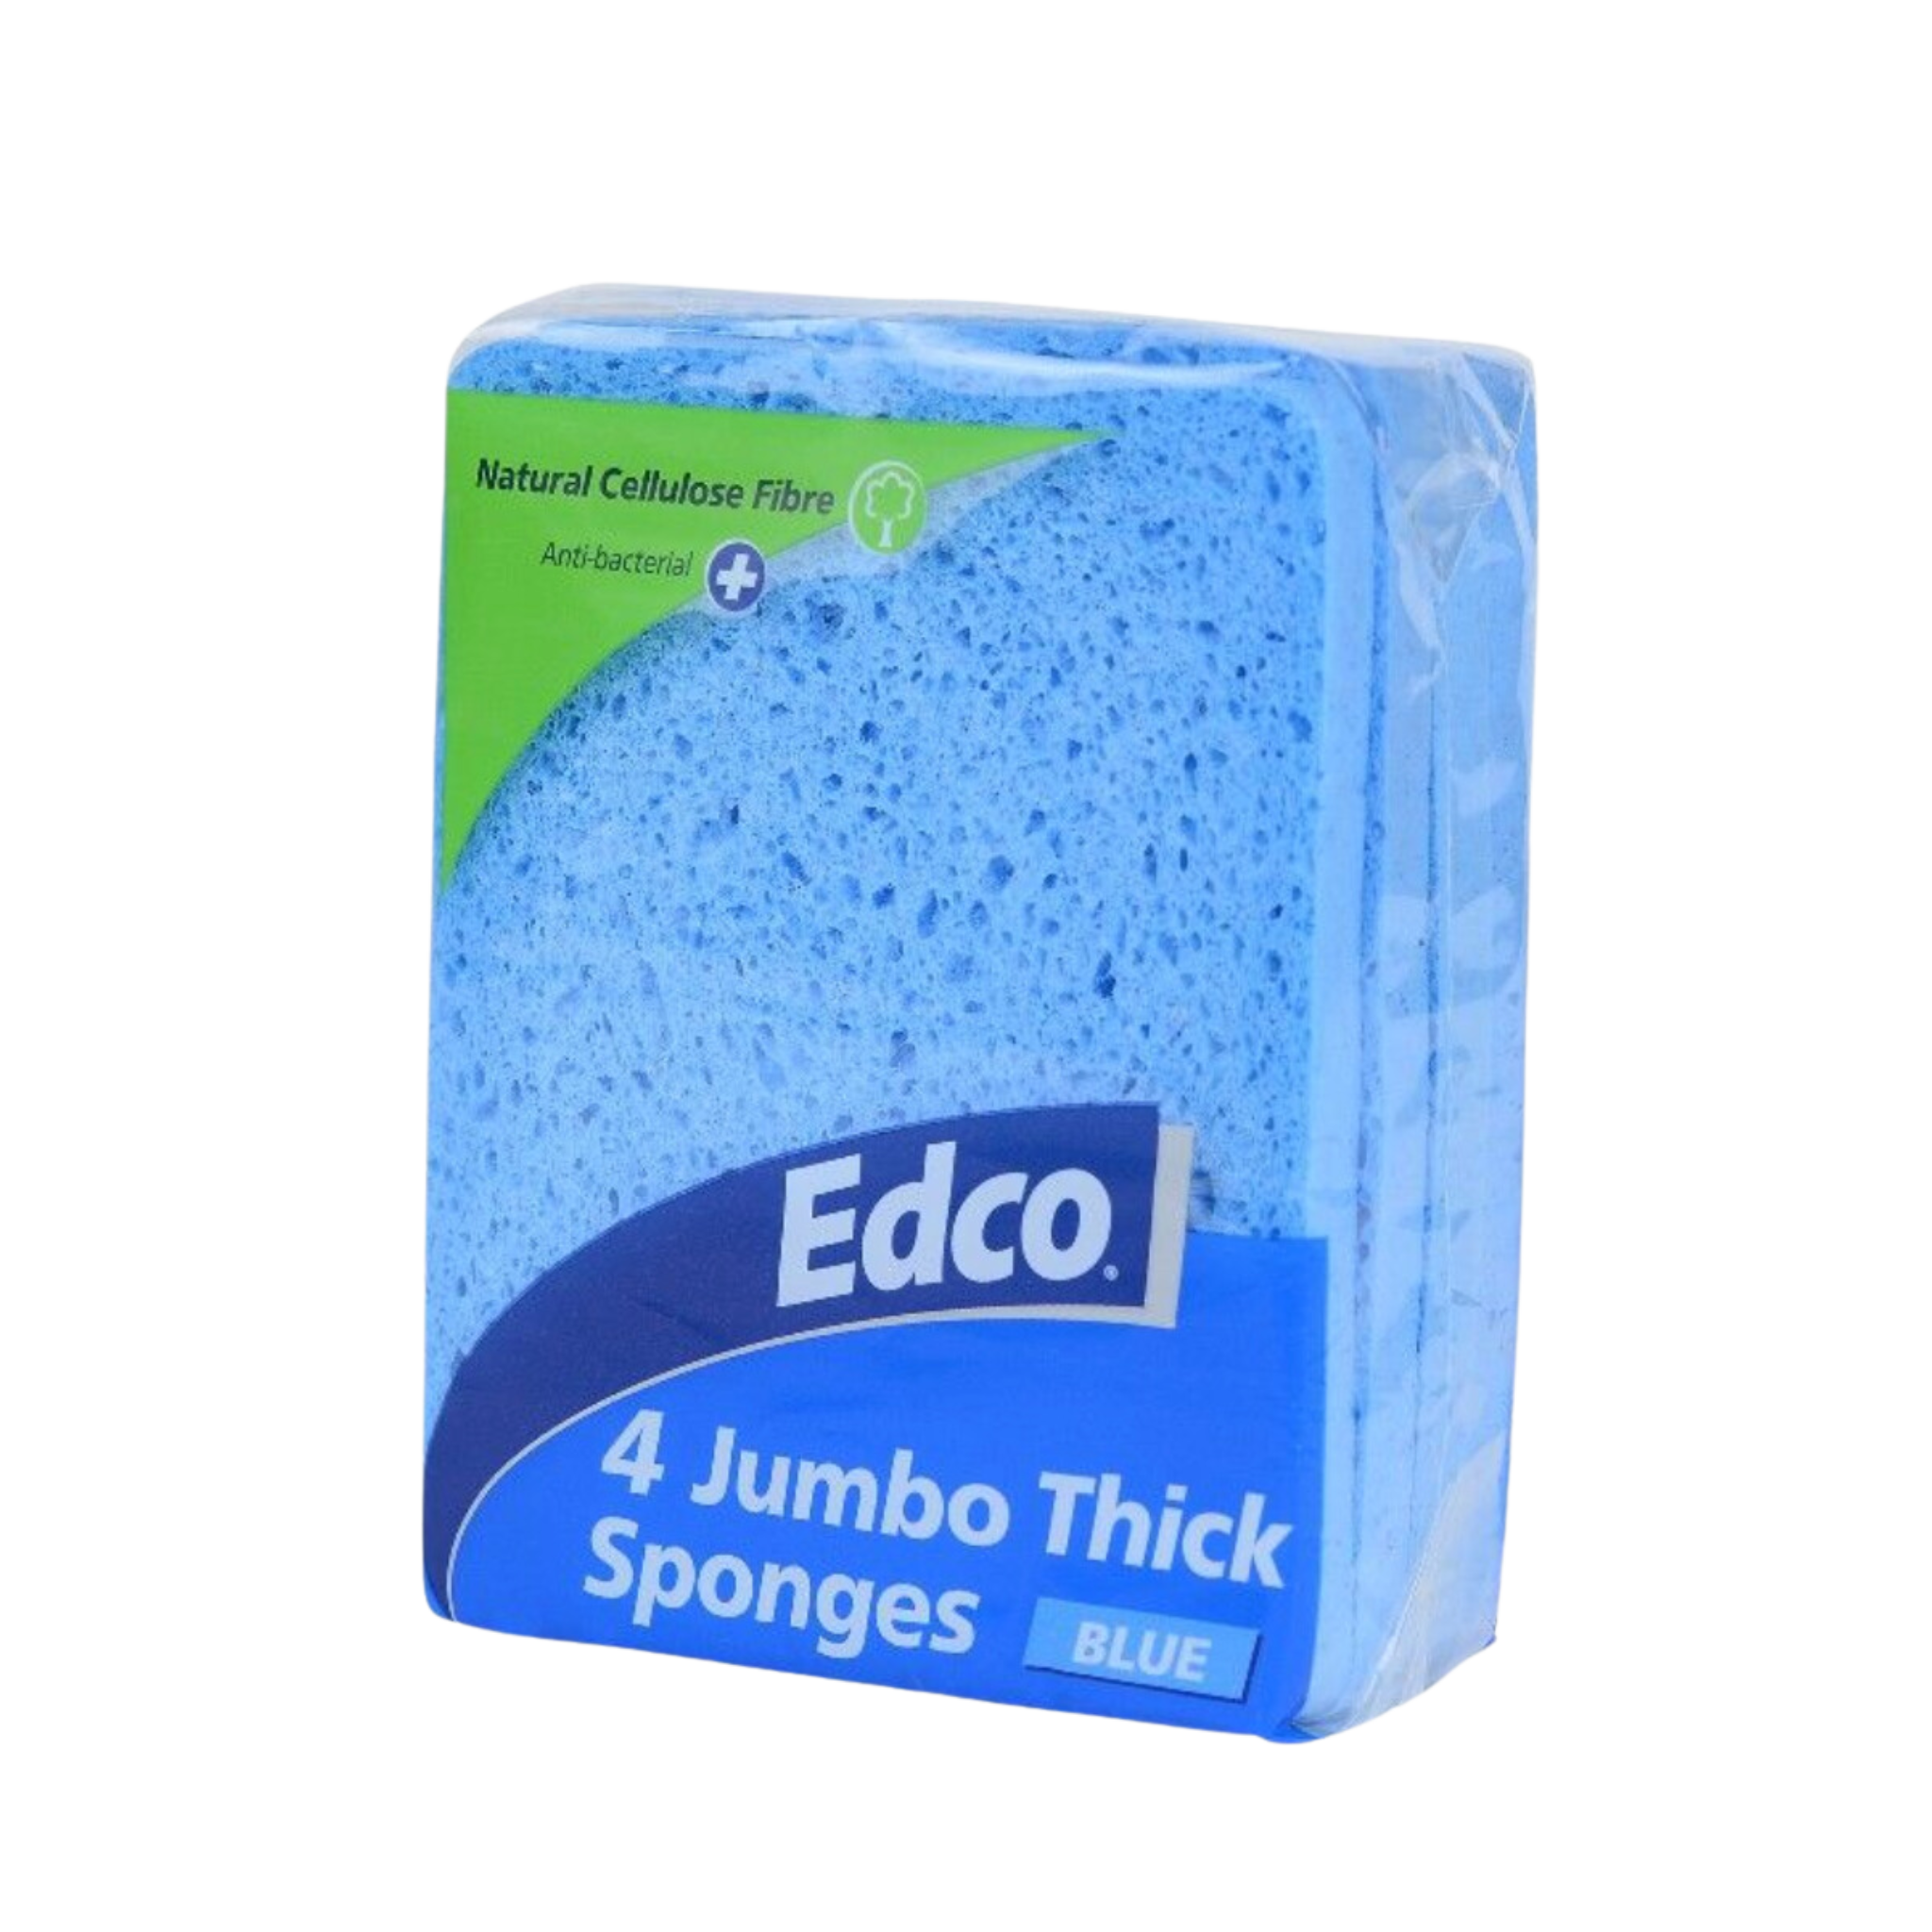 Edco Jumbo Sponge 4 Pack - Blue